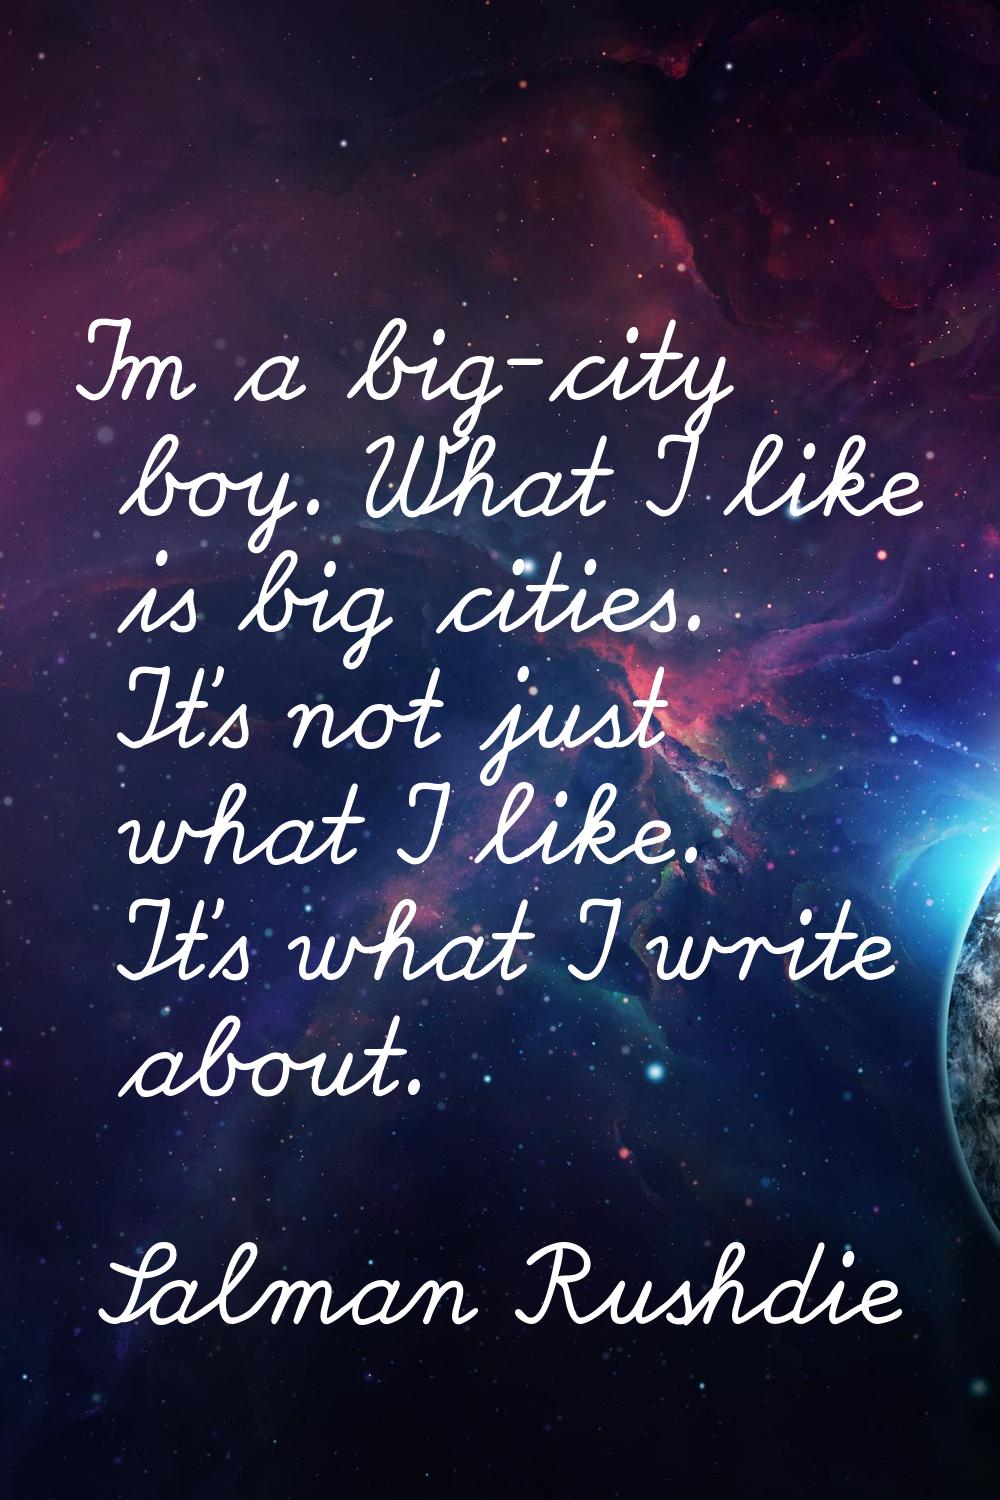 I'm a big-city boy. What I like is big cities. It's not just what I like. It's what I write about.